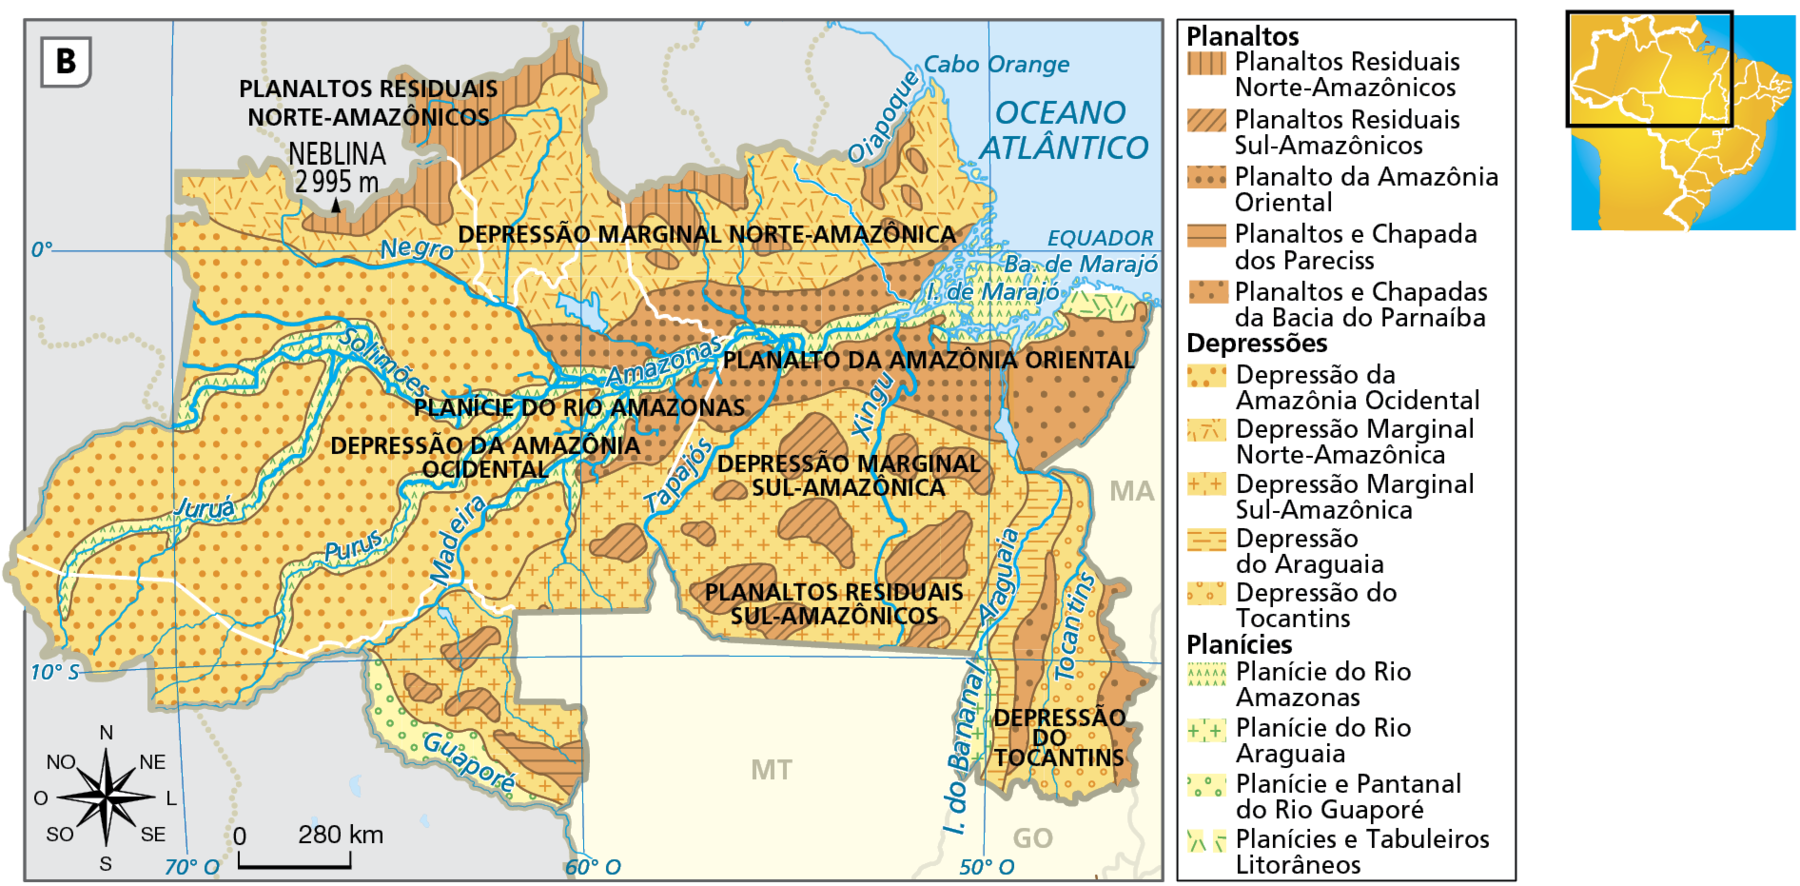 Mapa. Região norte: relevo.   
Mapa da região norte do Brasil com a distribuição das formas de relevo: planaltos, depressões e planícies. 
Grande parte da porção  oeste, sudoeste, sul e norte da região é composta por depressões, como a Depressão da Amazônia Ocidental, a Depressão Marginal Sul amazônica e a Marginal Norte Amazônica. 
Há planaltos no norte de Roraima e do Amazonas, os Planaltos residuais Norte Amazônicos, no centro e no nordeste do Pará (Planalto da Amazônia oriental) e no sul do Pará (planaltos Residuais Sul Amazônicos).  
As planícies se localizam nas margens dos rios Amazonas, Solimões, Juruá, Purus, Madeira e Guaporé e nas Ilhas do Bananal e de Marajó. Na parte inferior, rosa dos ventos com o norte orientado para cima e escala de 0 a 280 quilômetros.